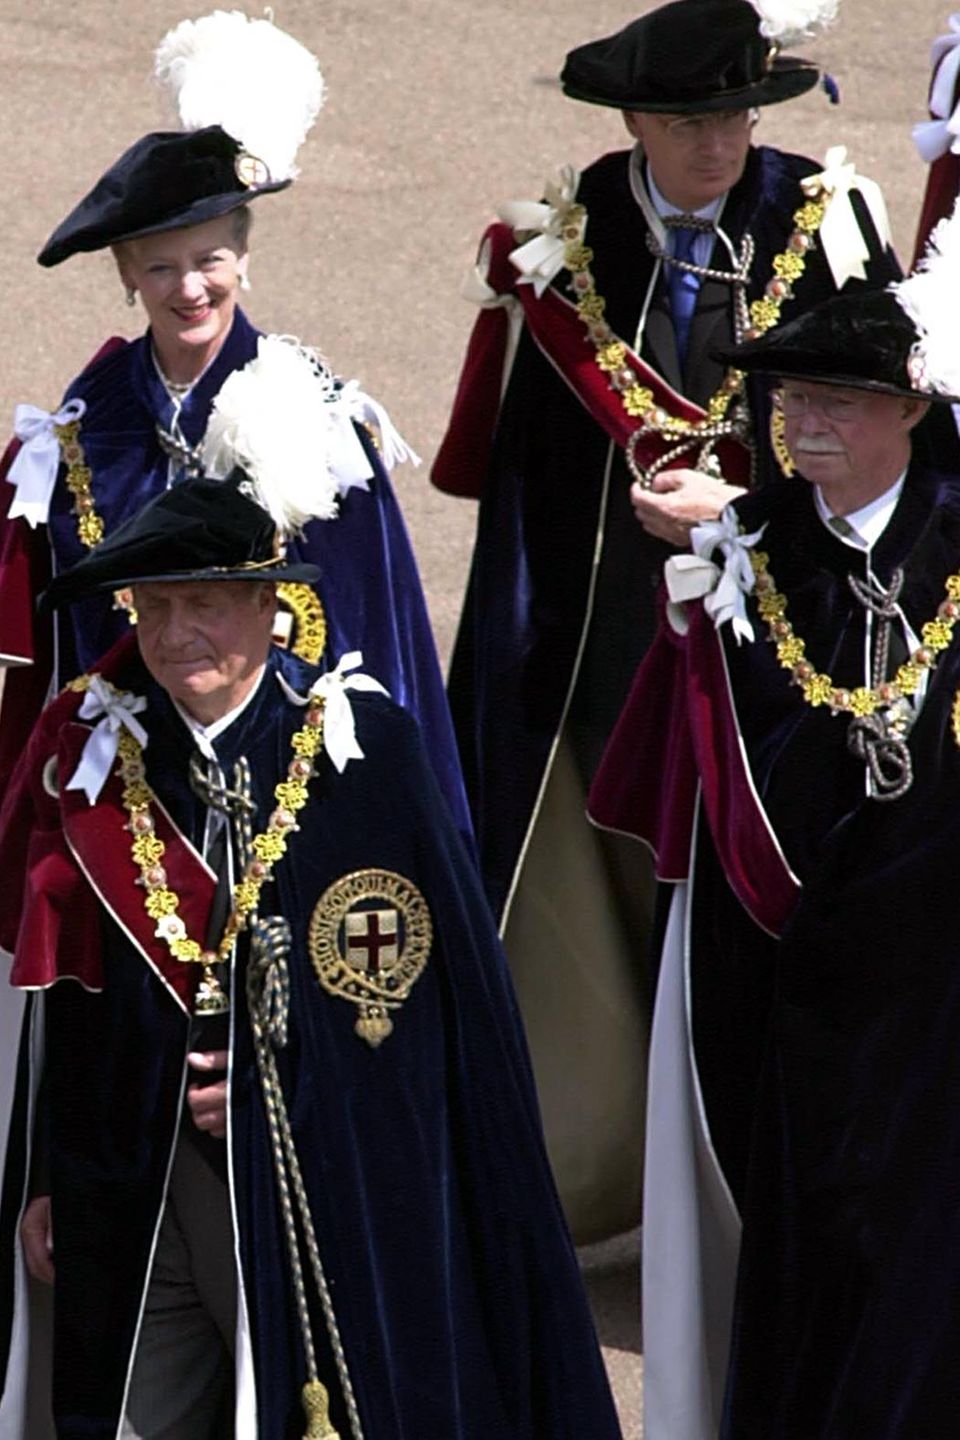 Ebenso wie einige seiner royalen Kollegen - Prinzessin Beatrix der Niederlande, Königin Margrethe von Dänemark, König Juan Carlos von Spanien - war auch Großherzog Jean von Luxemburg einer der ausgewählten "Ritter vom Hosenbandorden / Knights of the Royal Garter", des höchsten englischen Ritterordens.